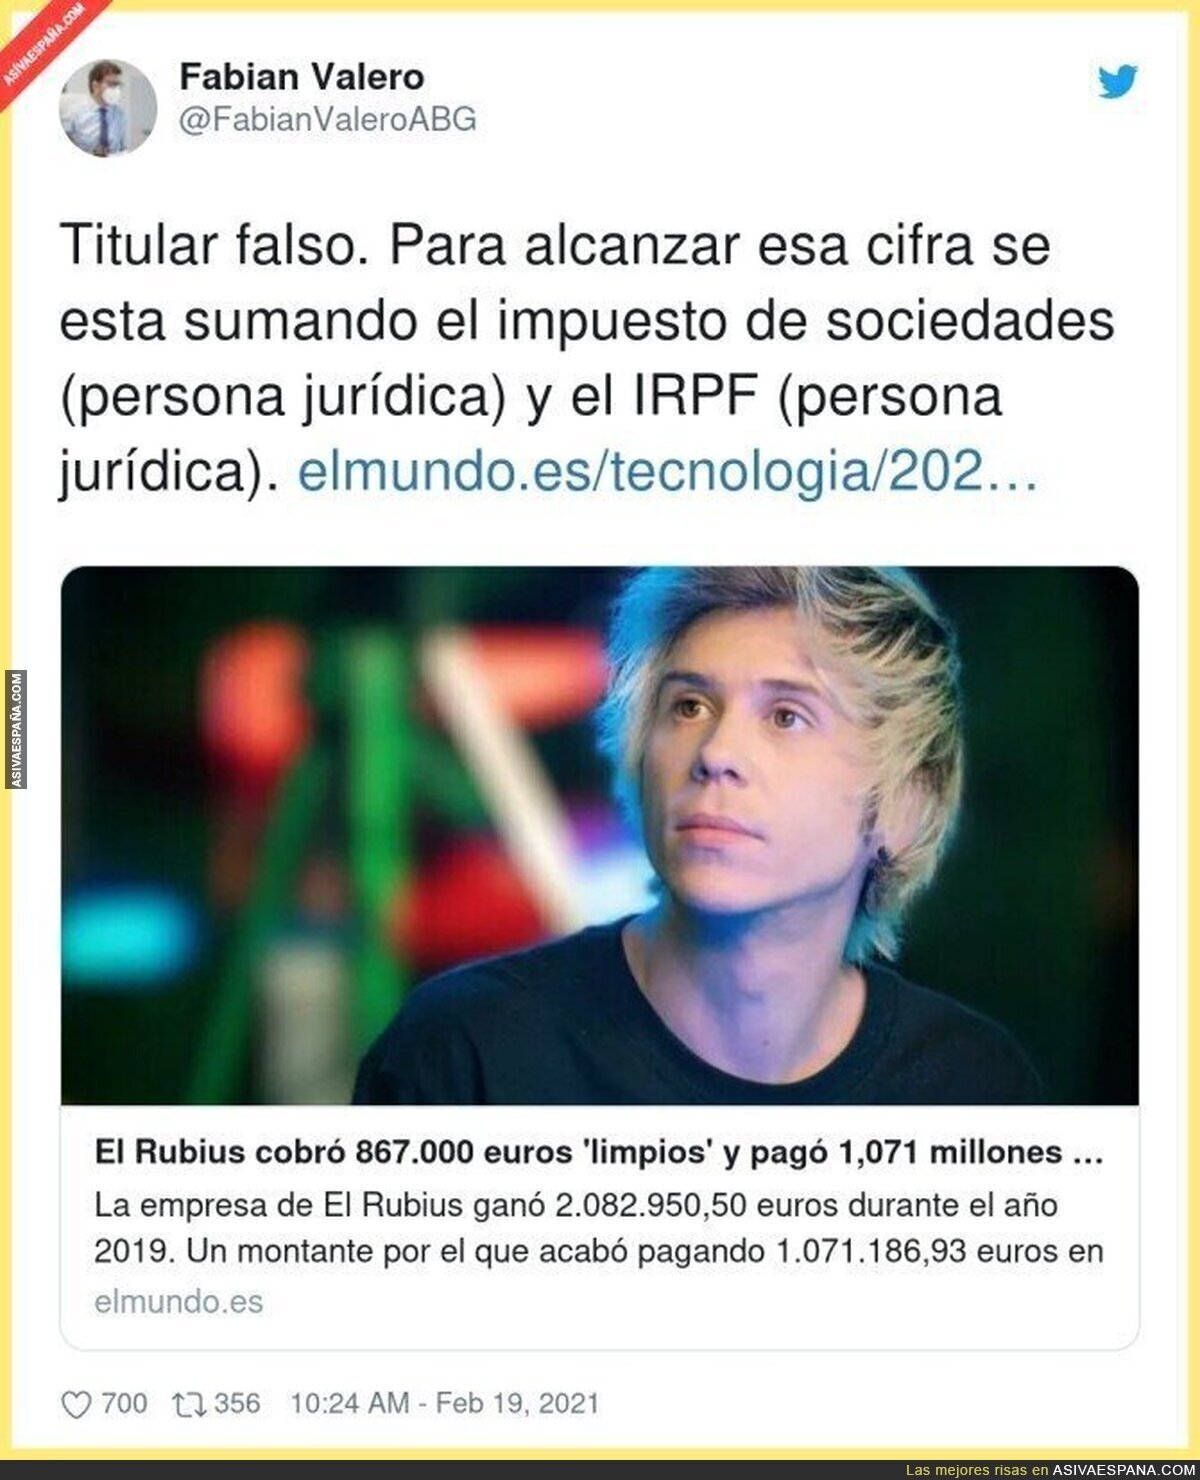 El Rubius es una persona física, y como tal pago 694.00 de IRPF y ganó limpios 867.000€